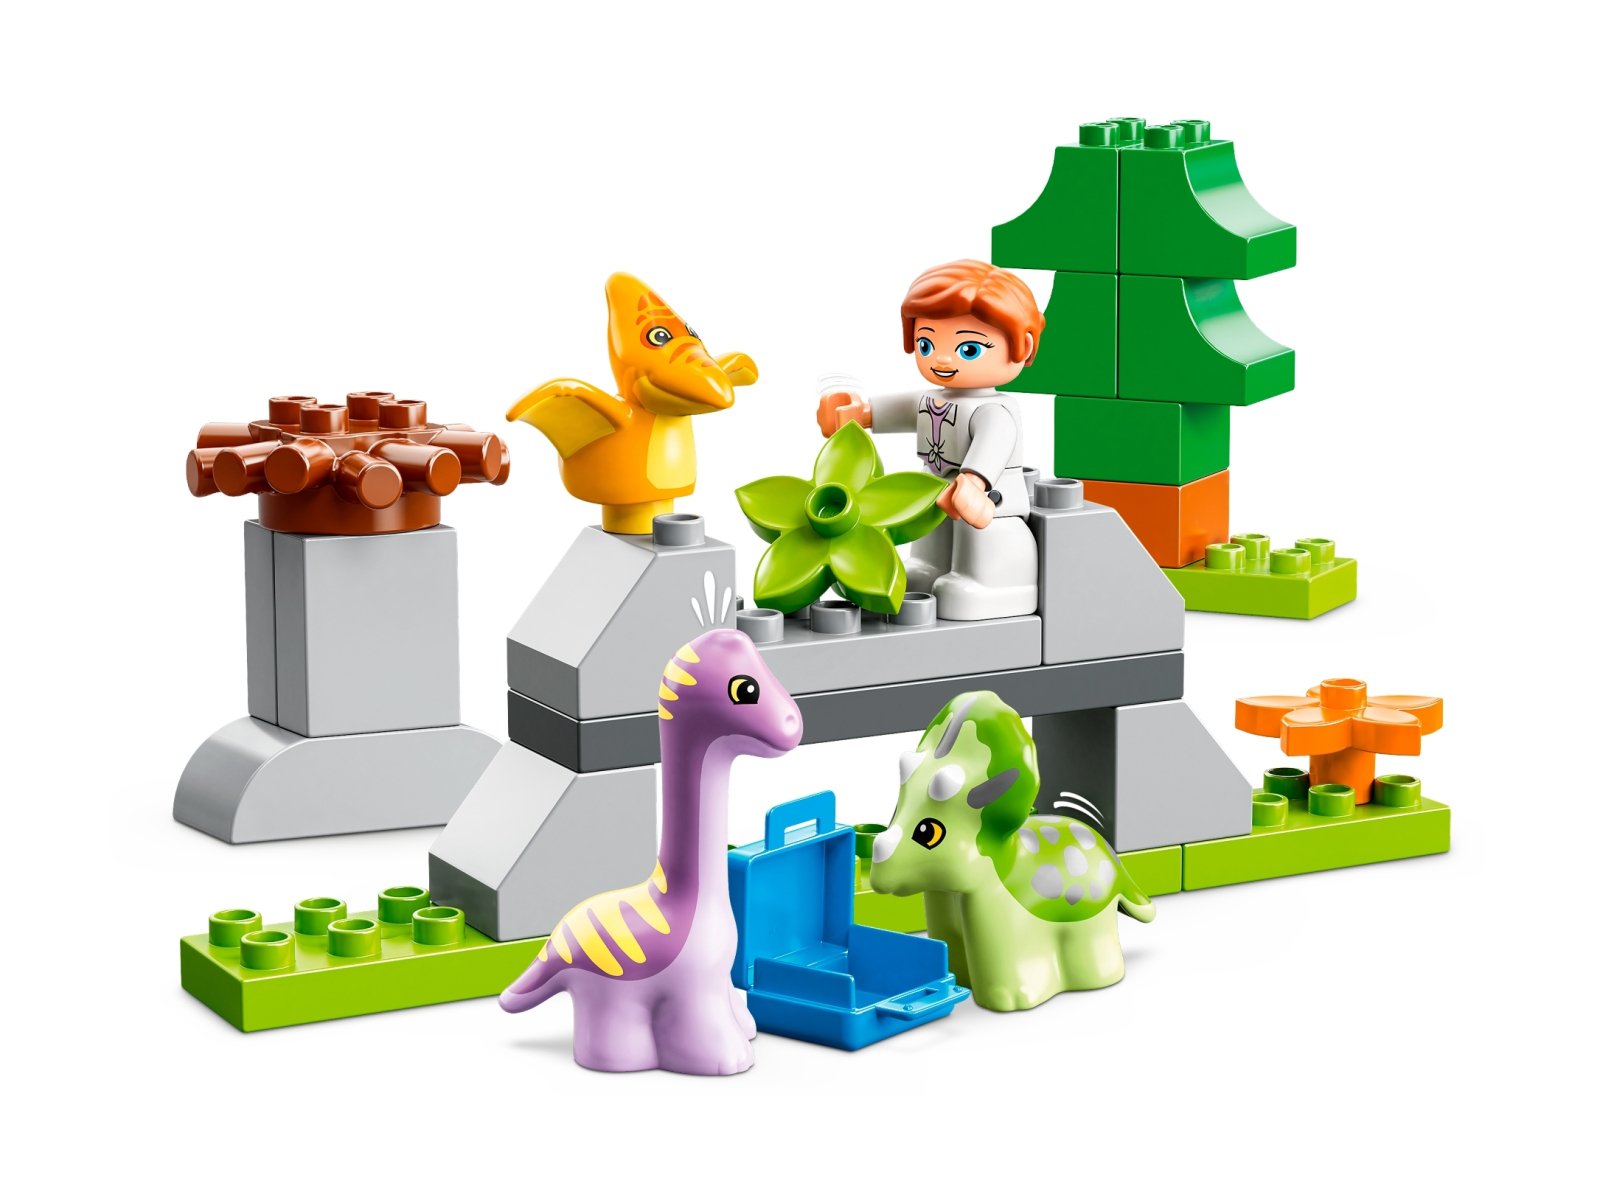 LEGO Duplo 10938 Dinozaurowa szkółka